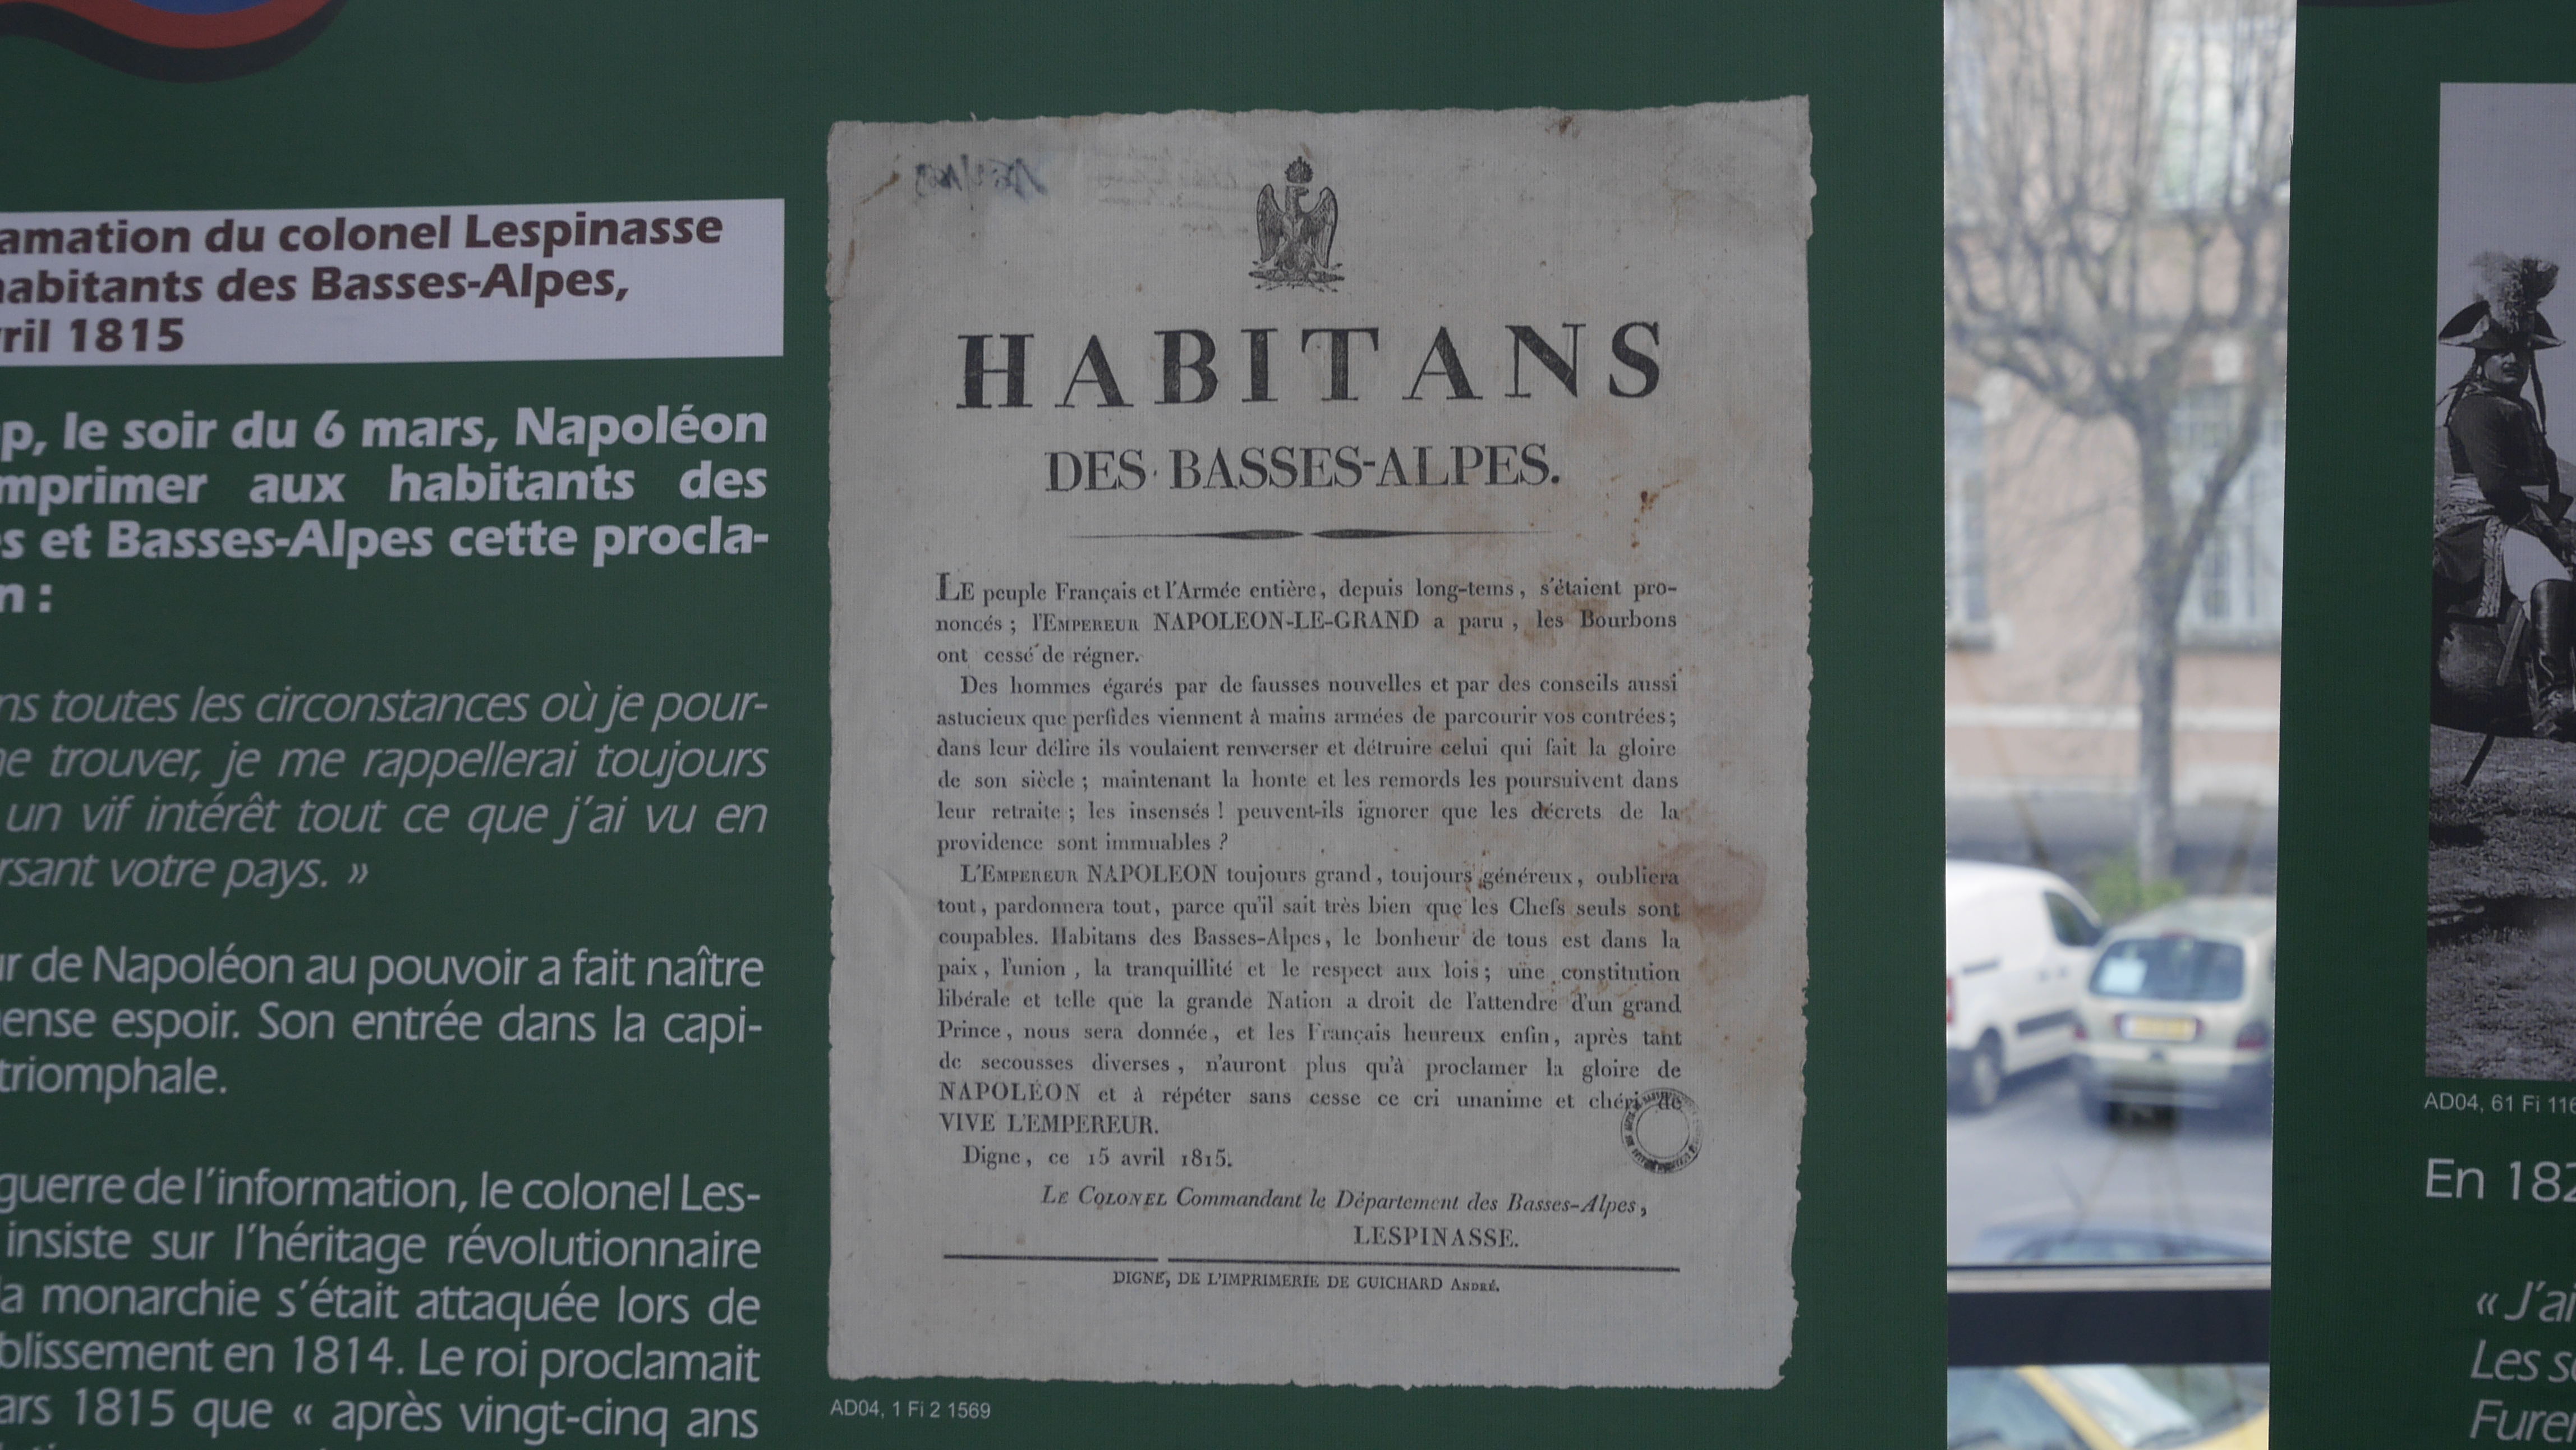 Sur les traces de Napoléon dans les Basse-Alpes, un documentaire et une exposition 